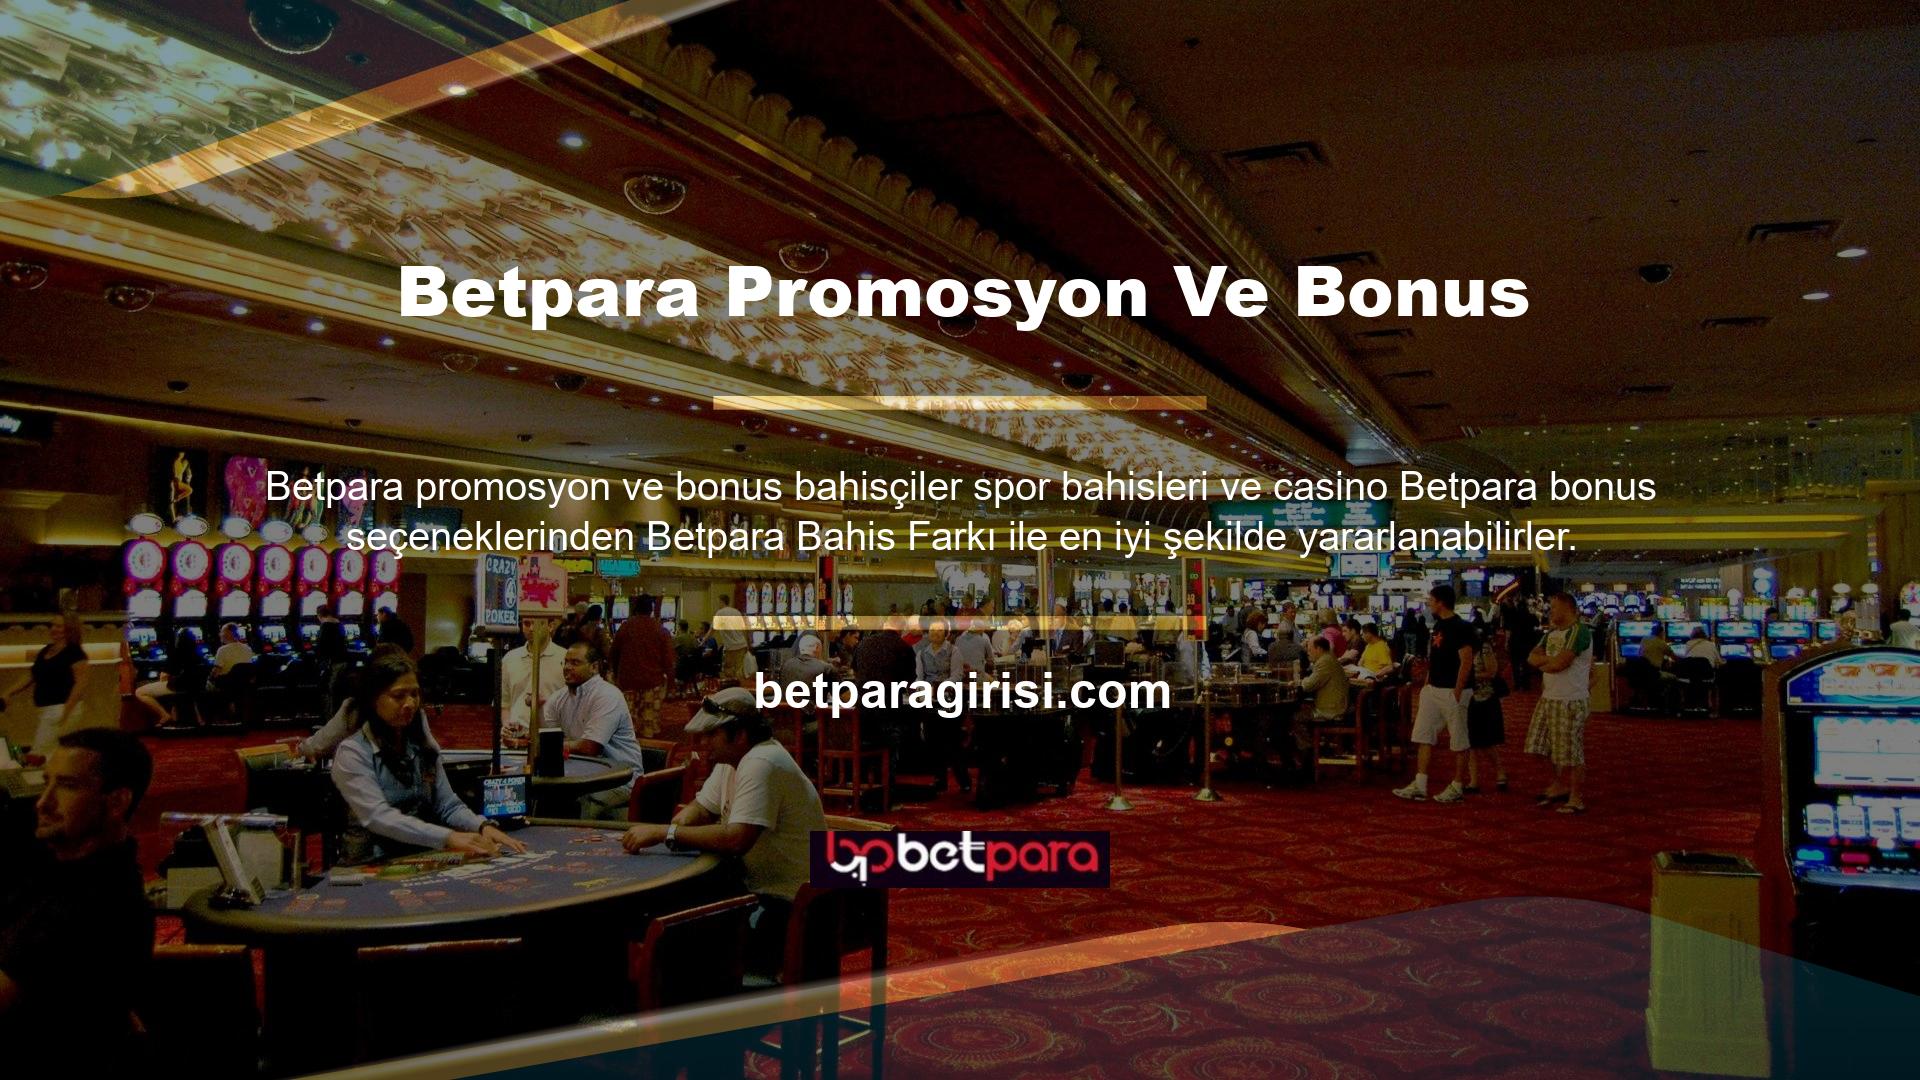 Sürekli büyüyen çevrimiçi casino endüstrisinde, farklı seçenekler ve şirketler arasında rekabet vardır, bu nedenle Betpara keşfeden kullanıcılar, sistemin güvenilirliğini ve kullanıcılara sunduğu fırsatları takdir etmektedir